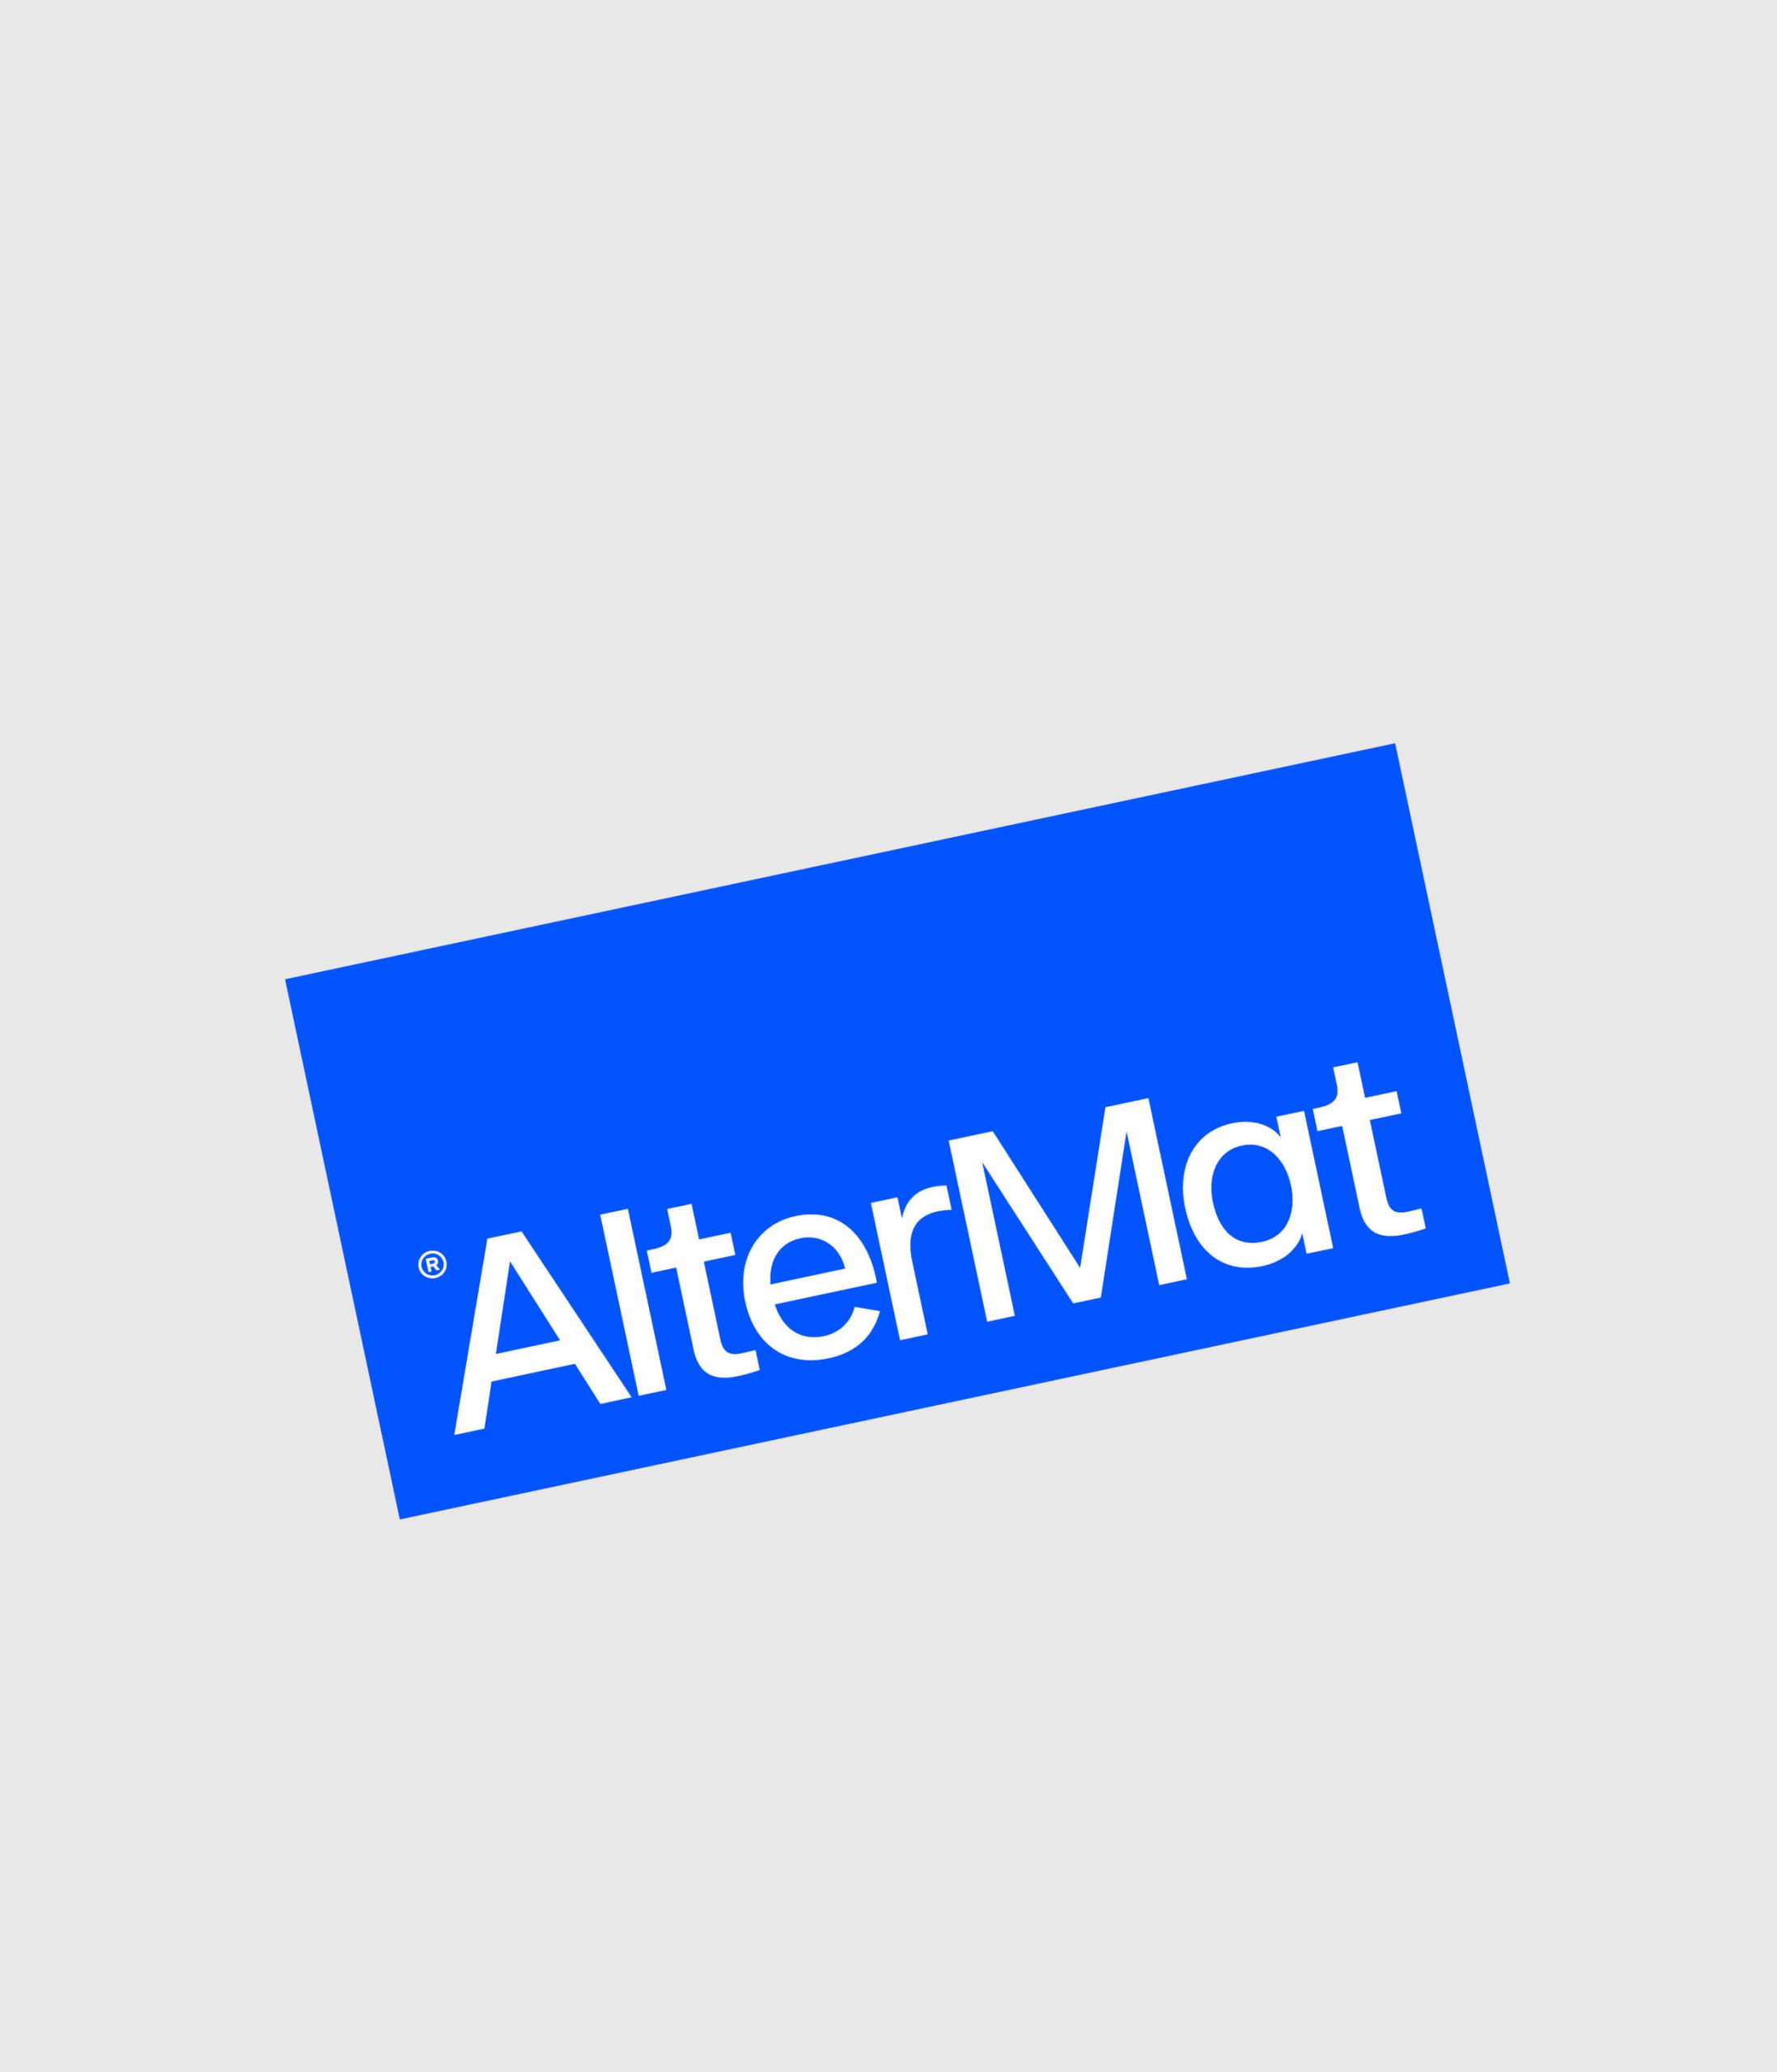 Identidad gráfica AlterMat materiales y soluciones sostenibles para la construcción.